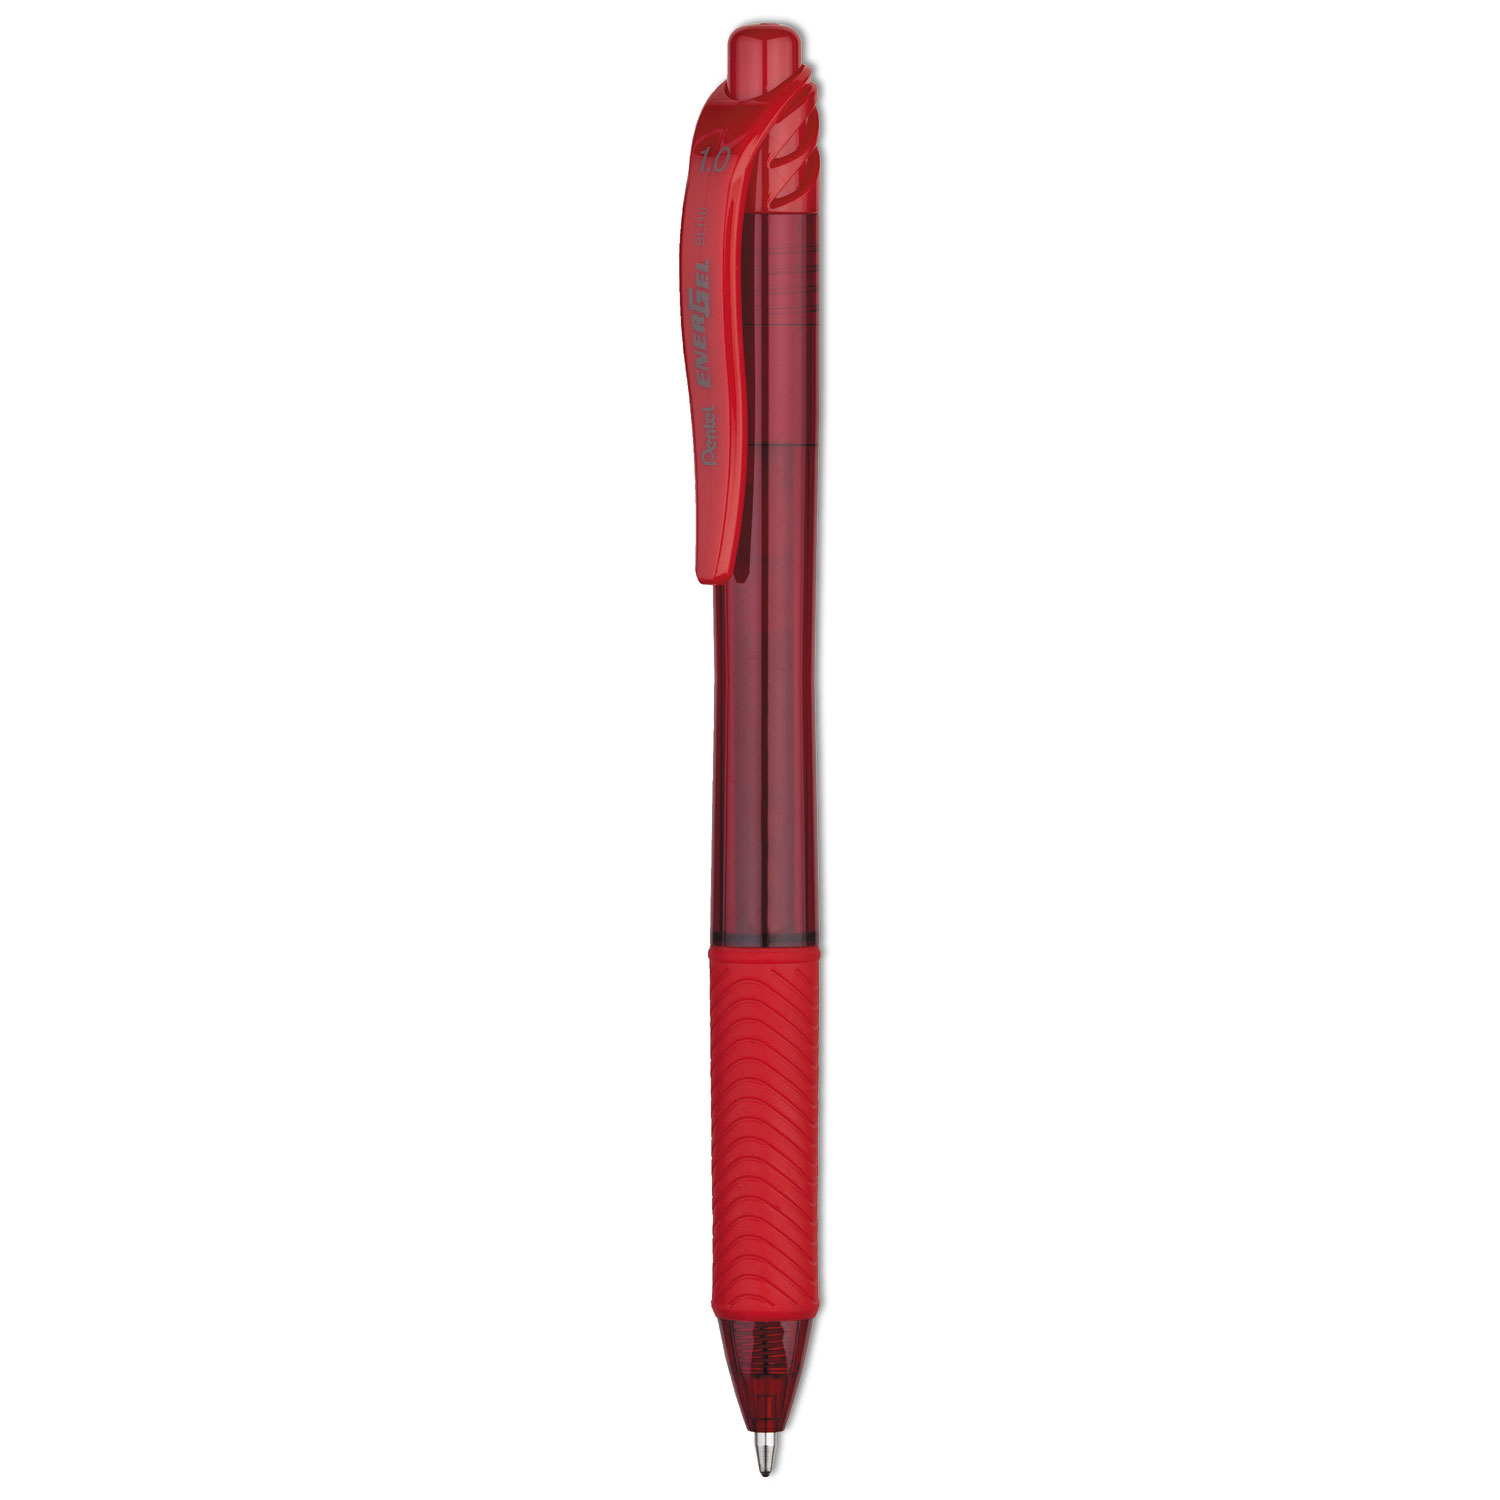 Pentel® EnerGel-X Retractable Gel Pen, 1 mm Metal Tip, Red Ink, Translucent Red Barrel, Dozen